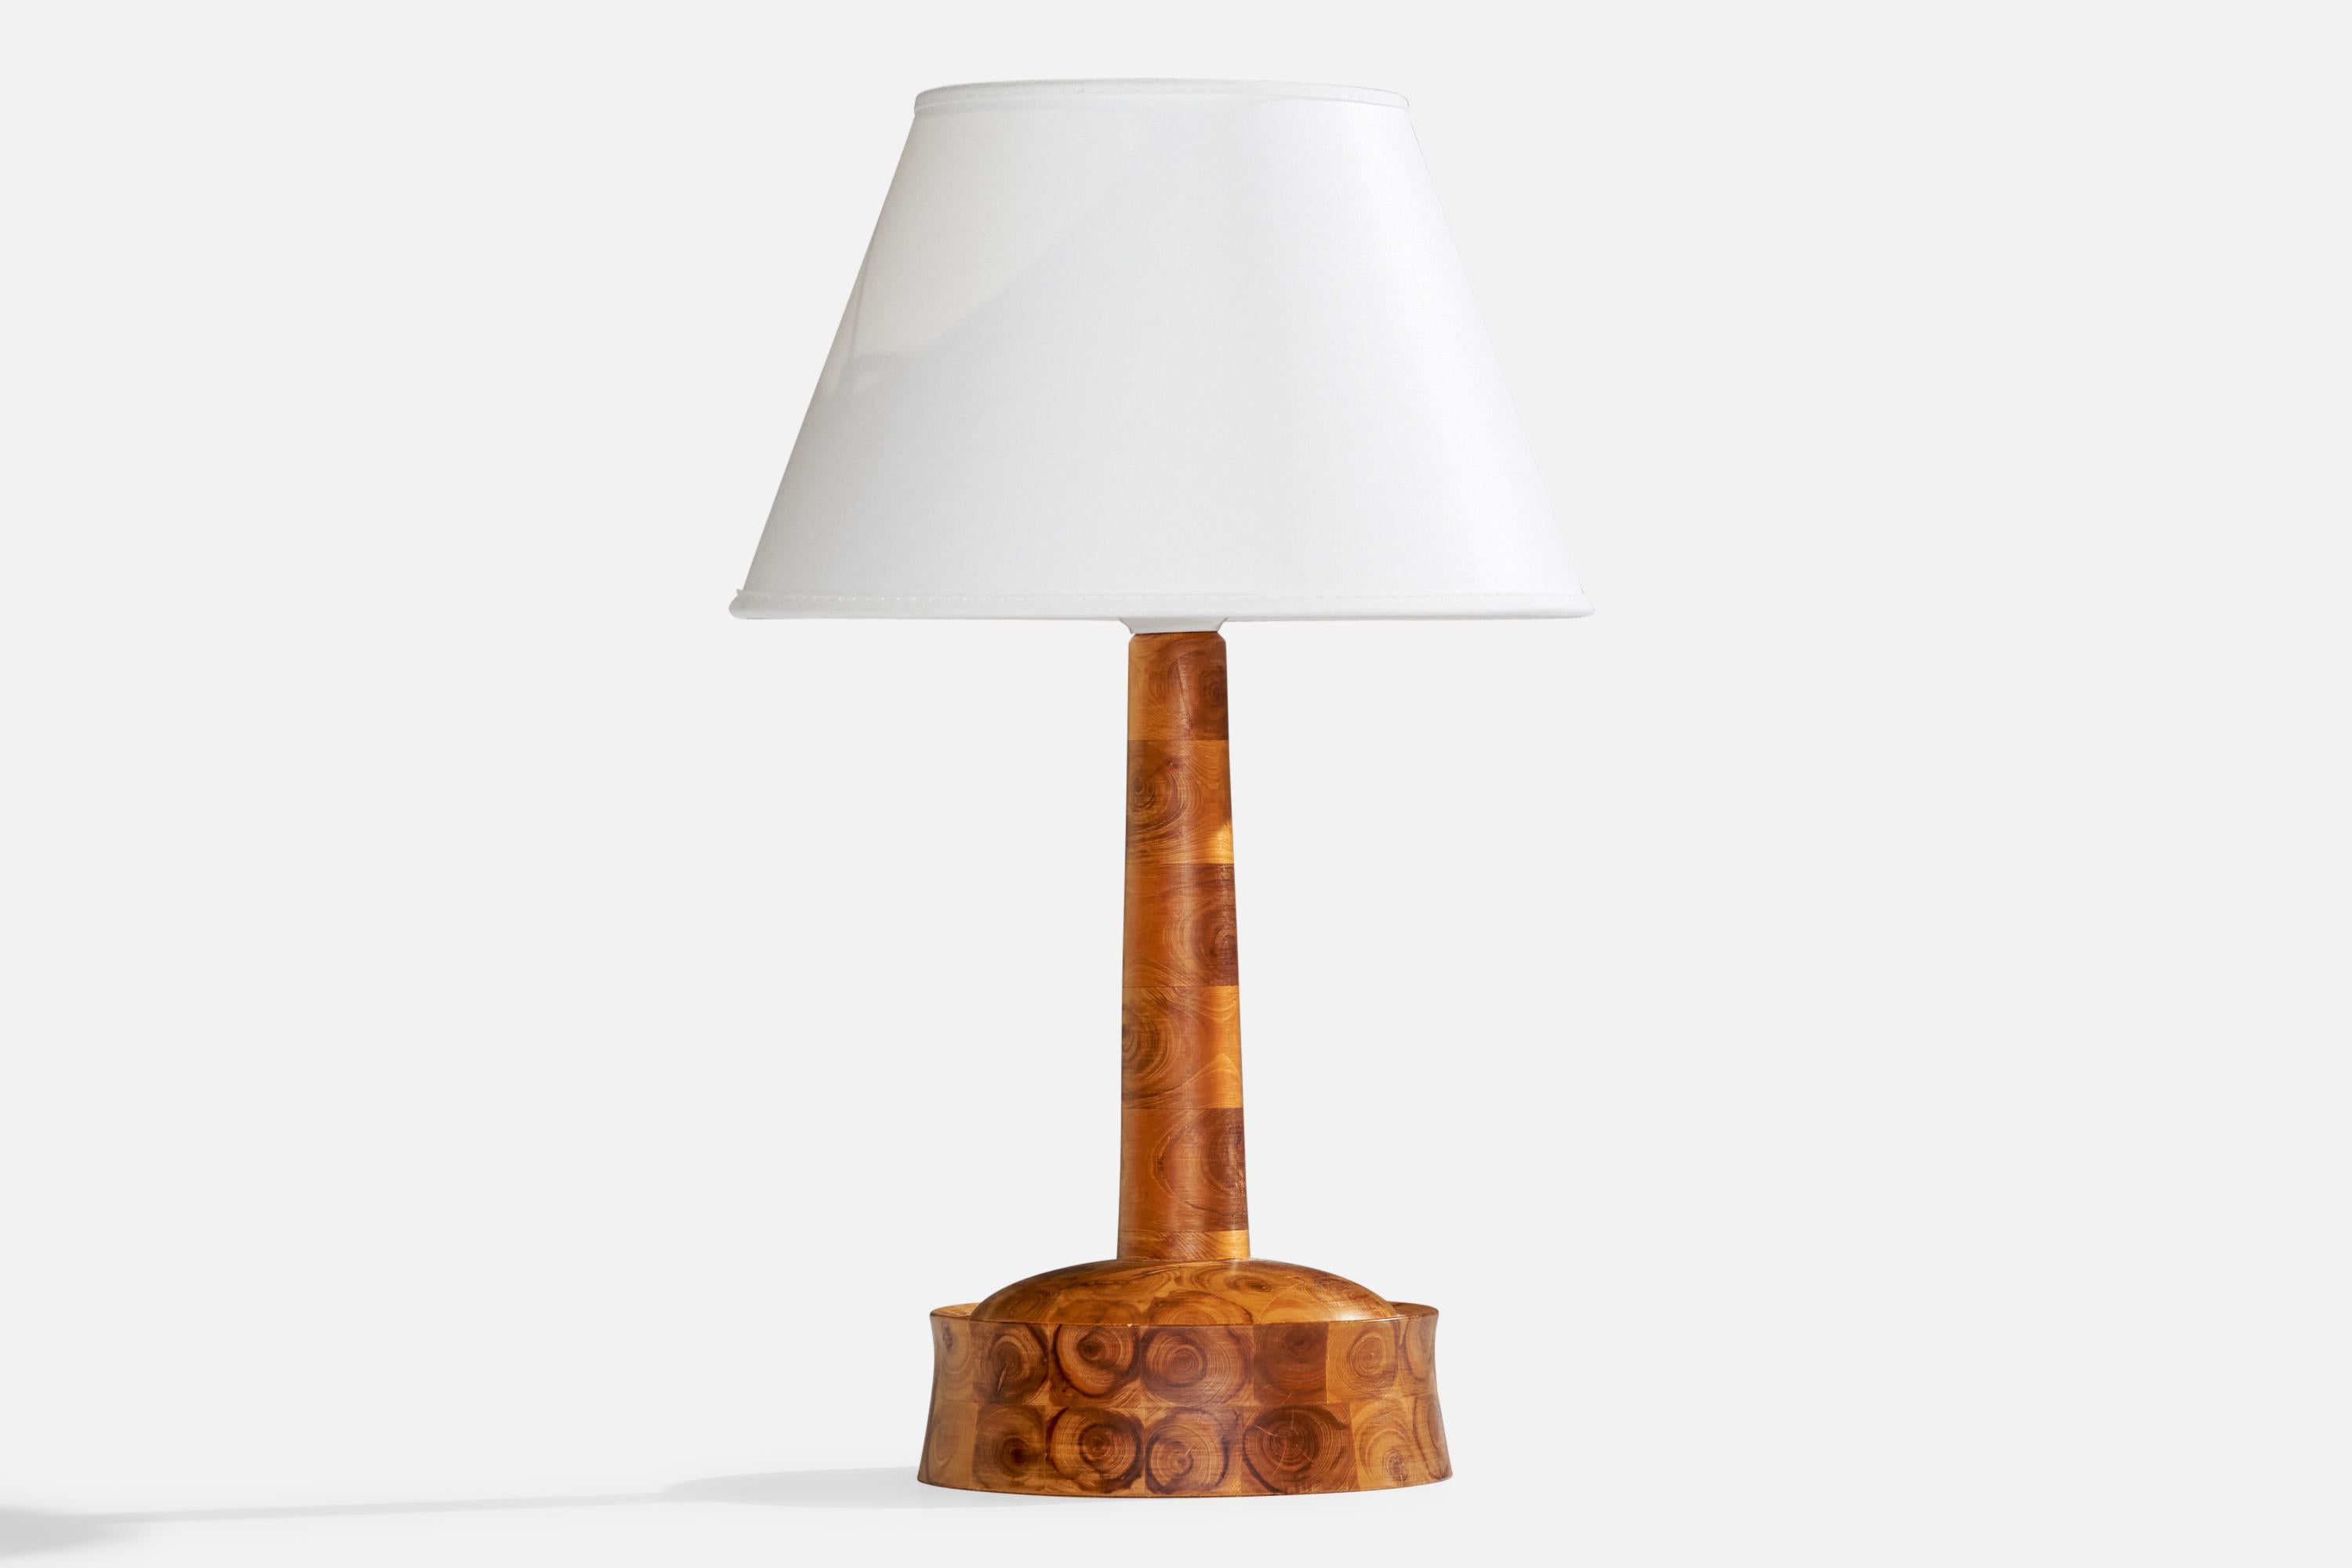 Lampe de table en bois stratifié empilé, conçue et produite en Suède, c.C. 1970.

Dimensions de la lampe (pouces) : 10.5